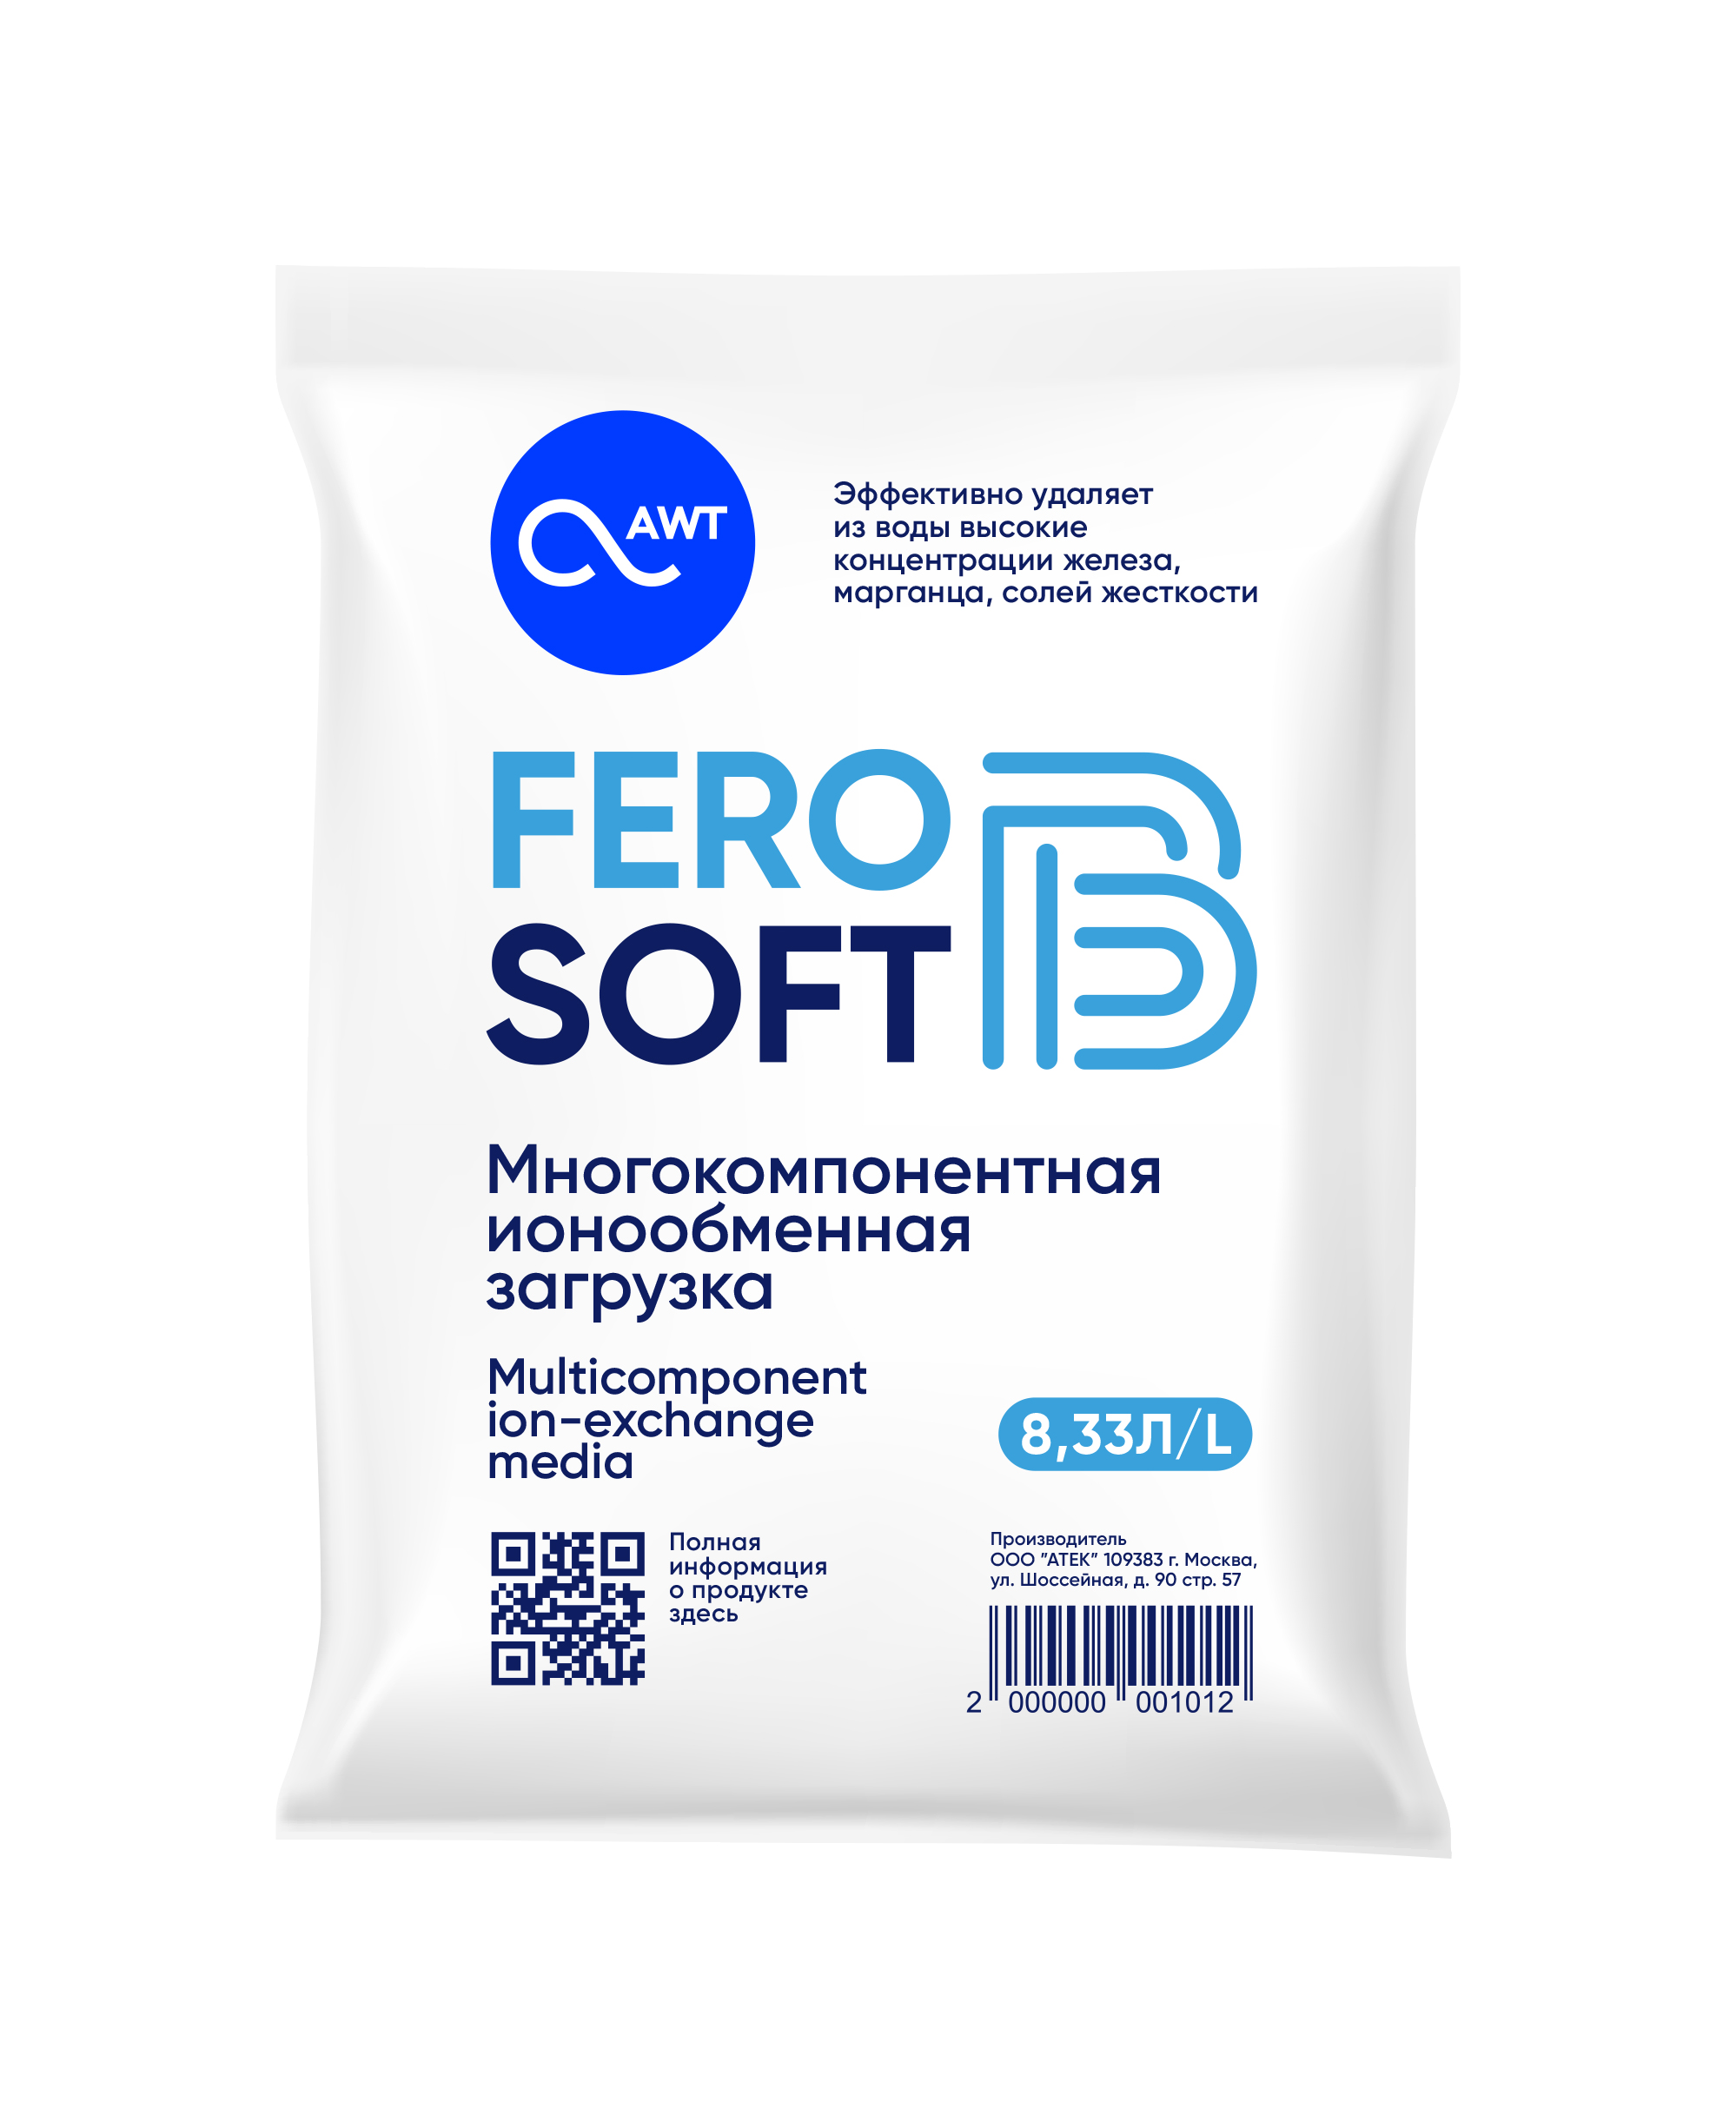  Многокомпонентная загрузка FeroSoft-B